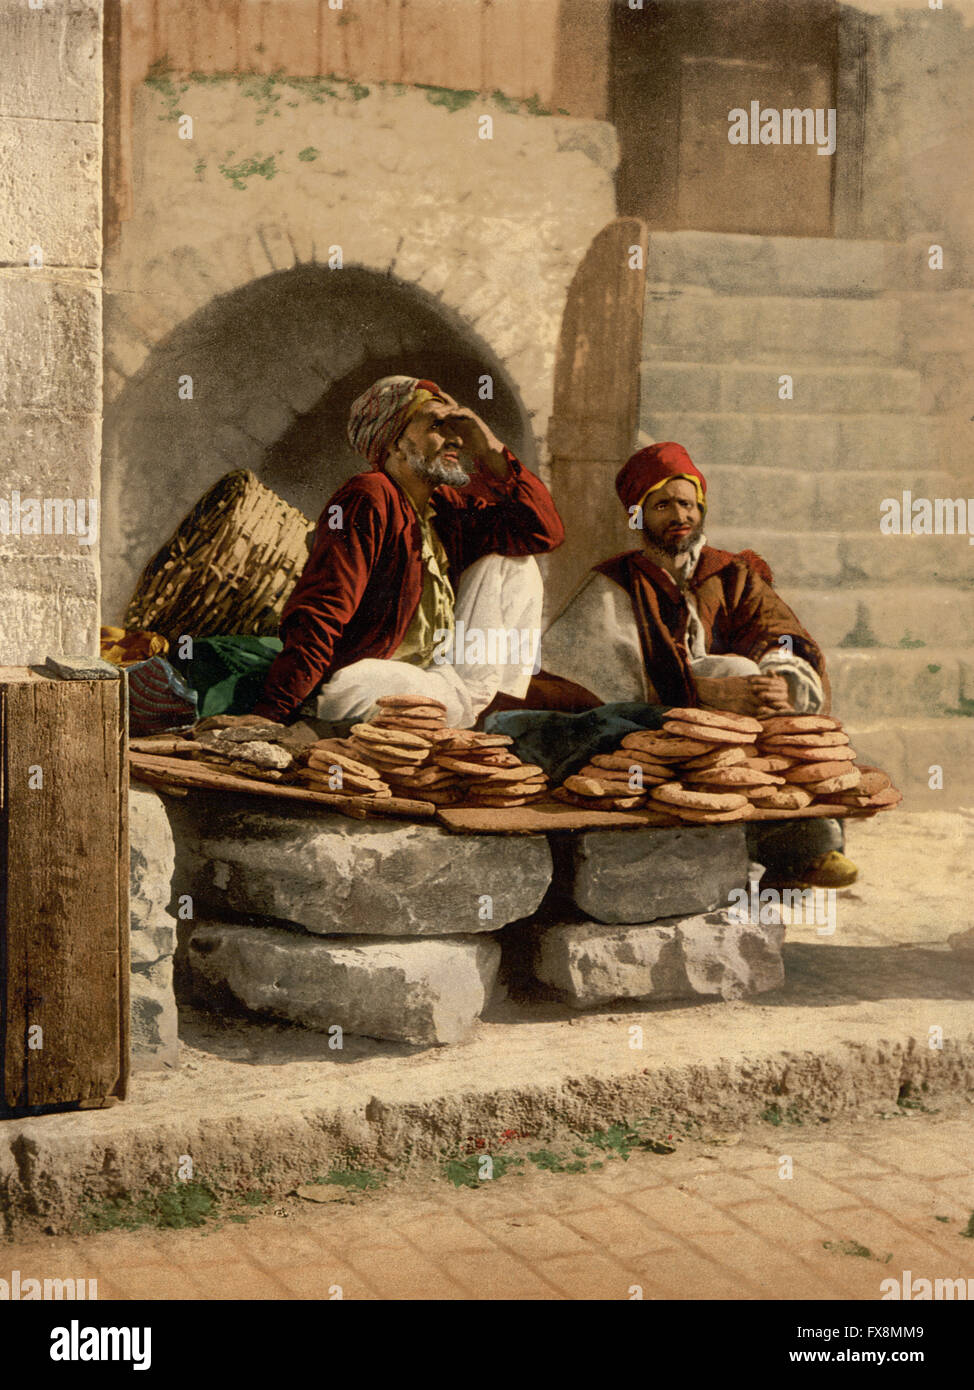 Les vendeurs de pain, Jérusalem, Terre Sainte, impression Photochrome, vers 1900 Banque D'Images